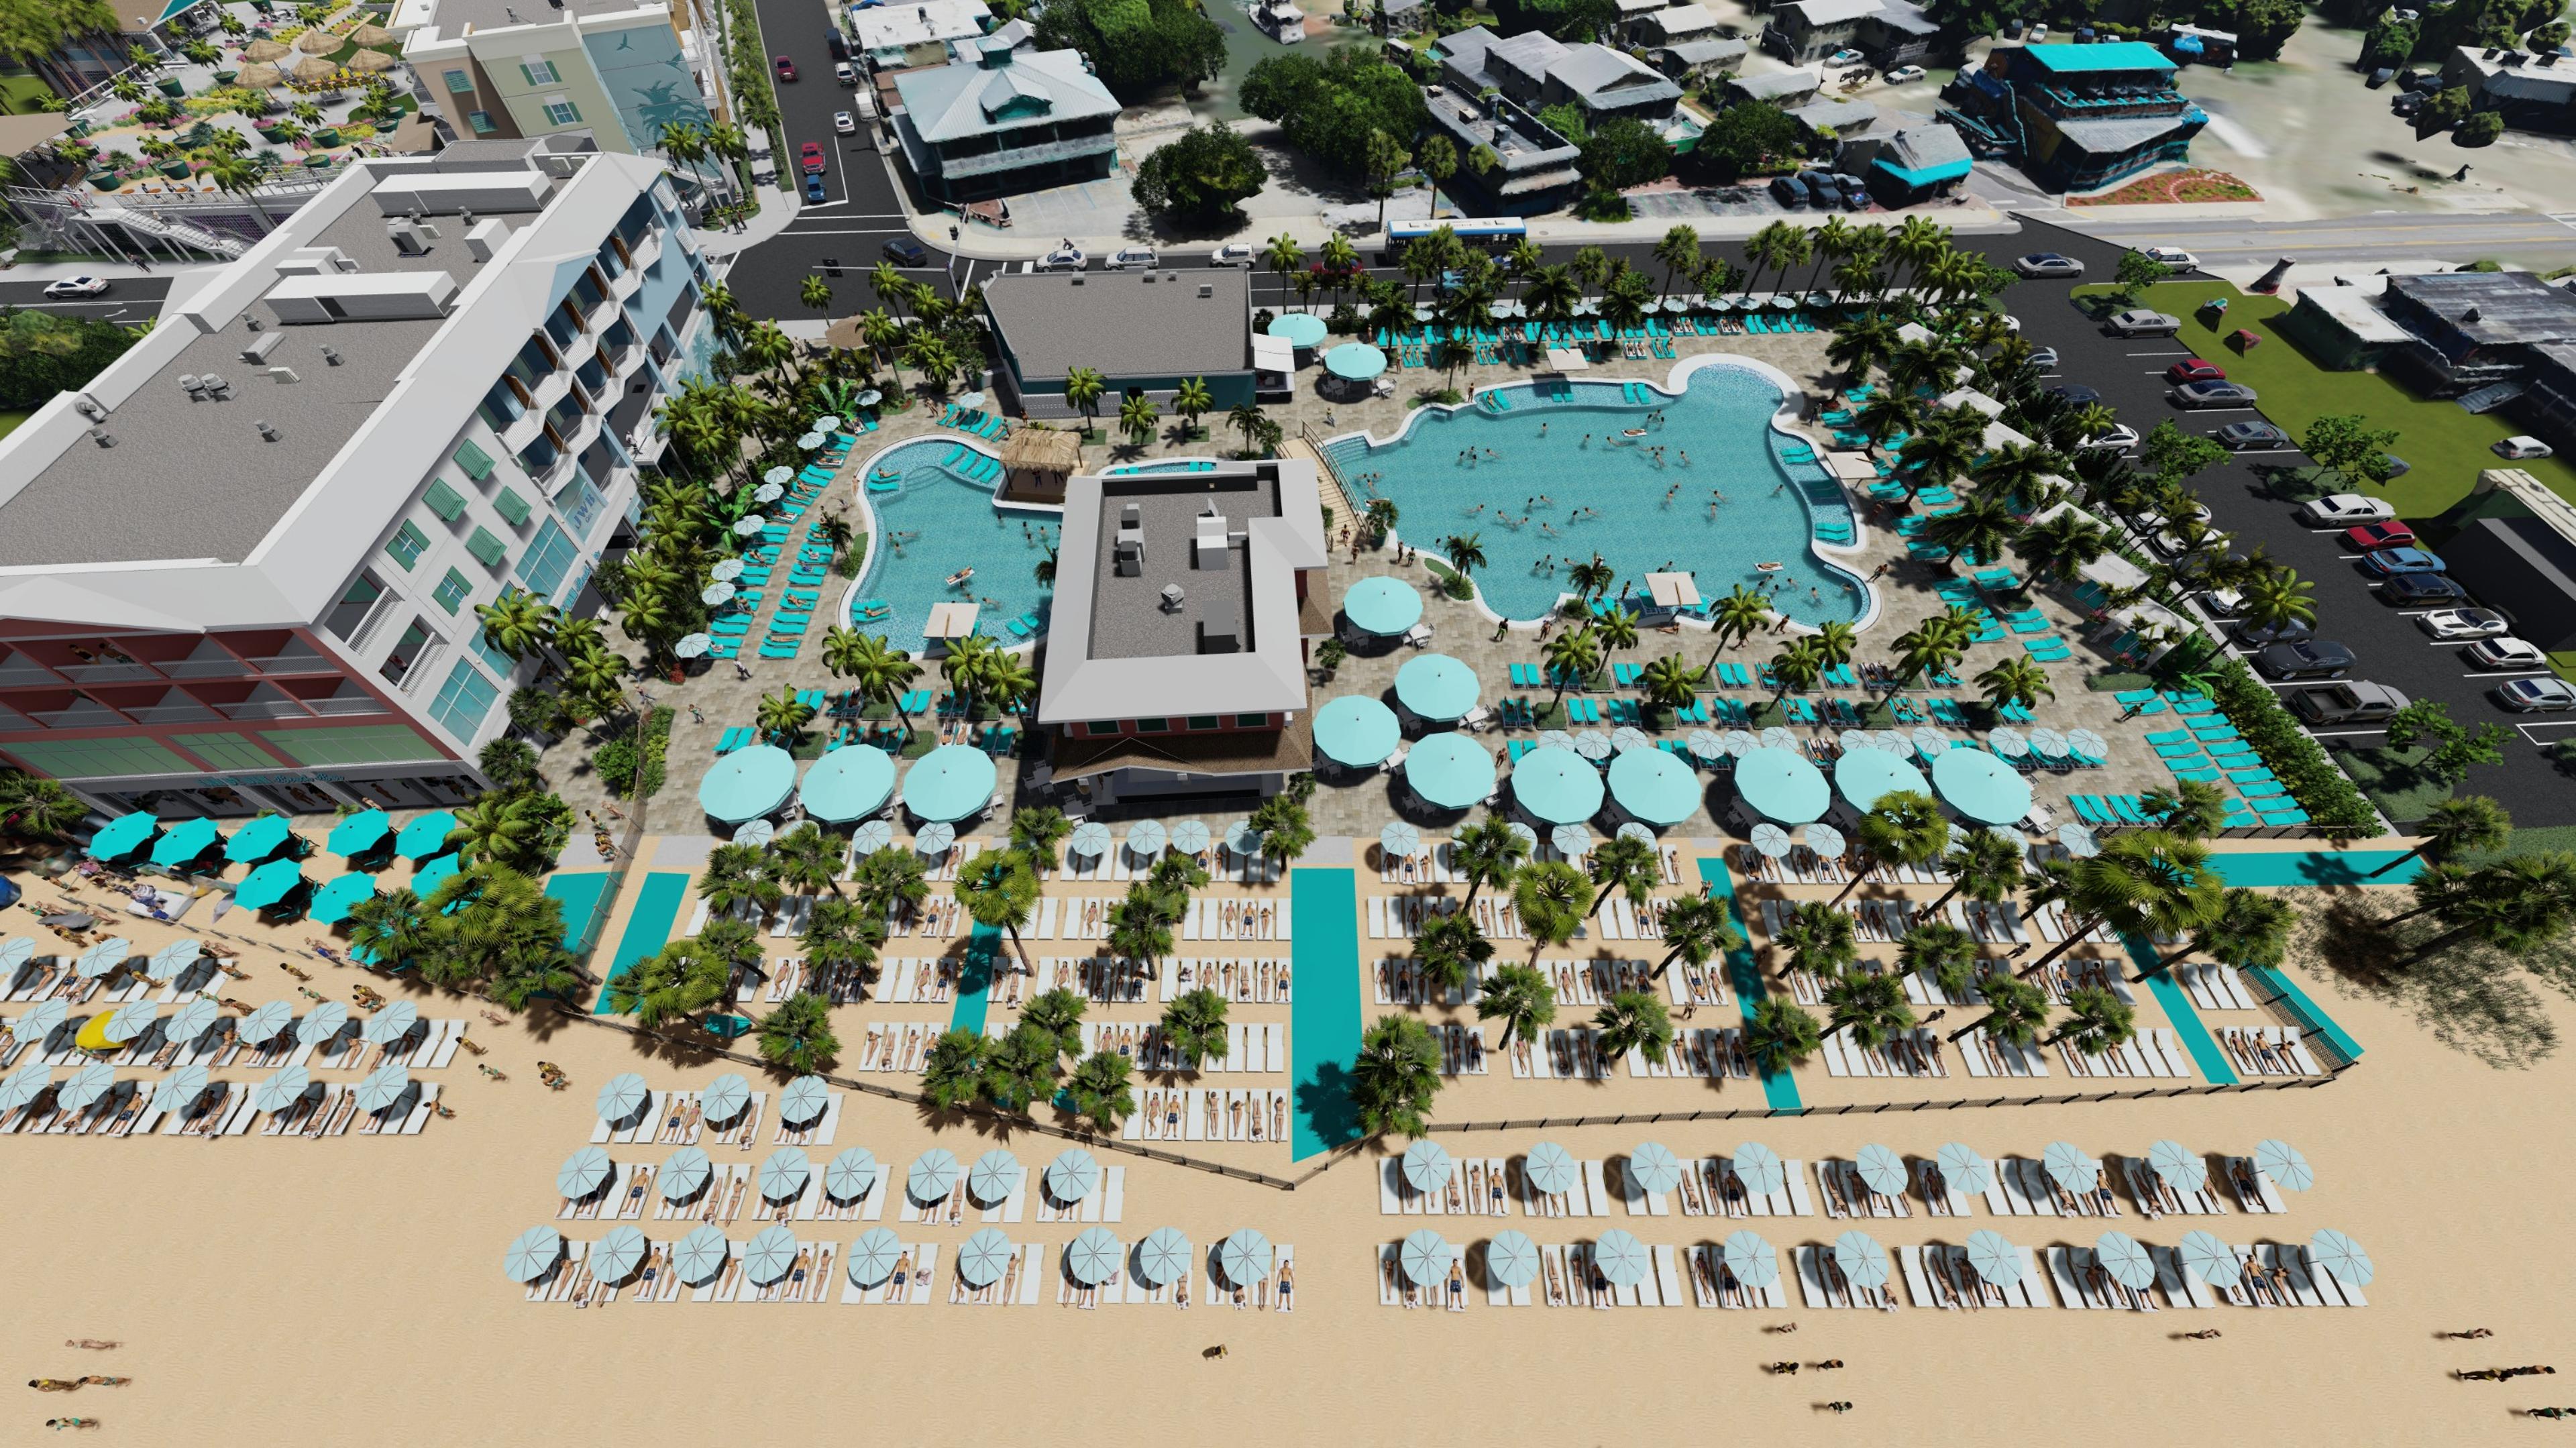 Margaritaville Beach Resort Fort Myers Beach